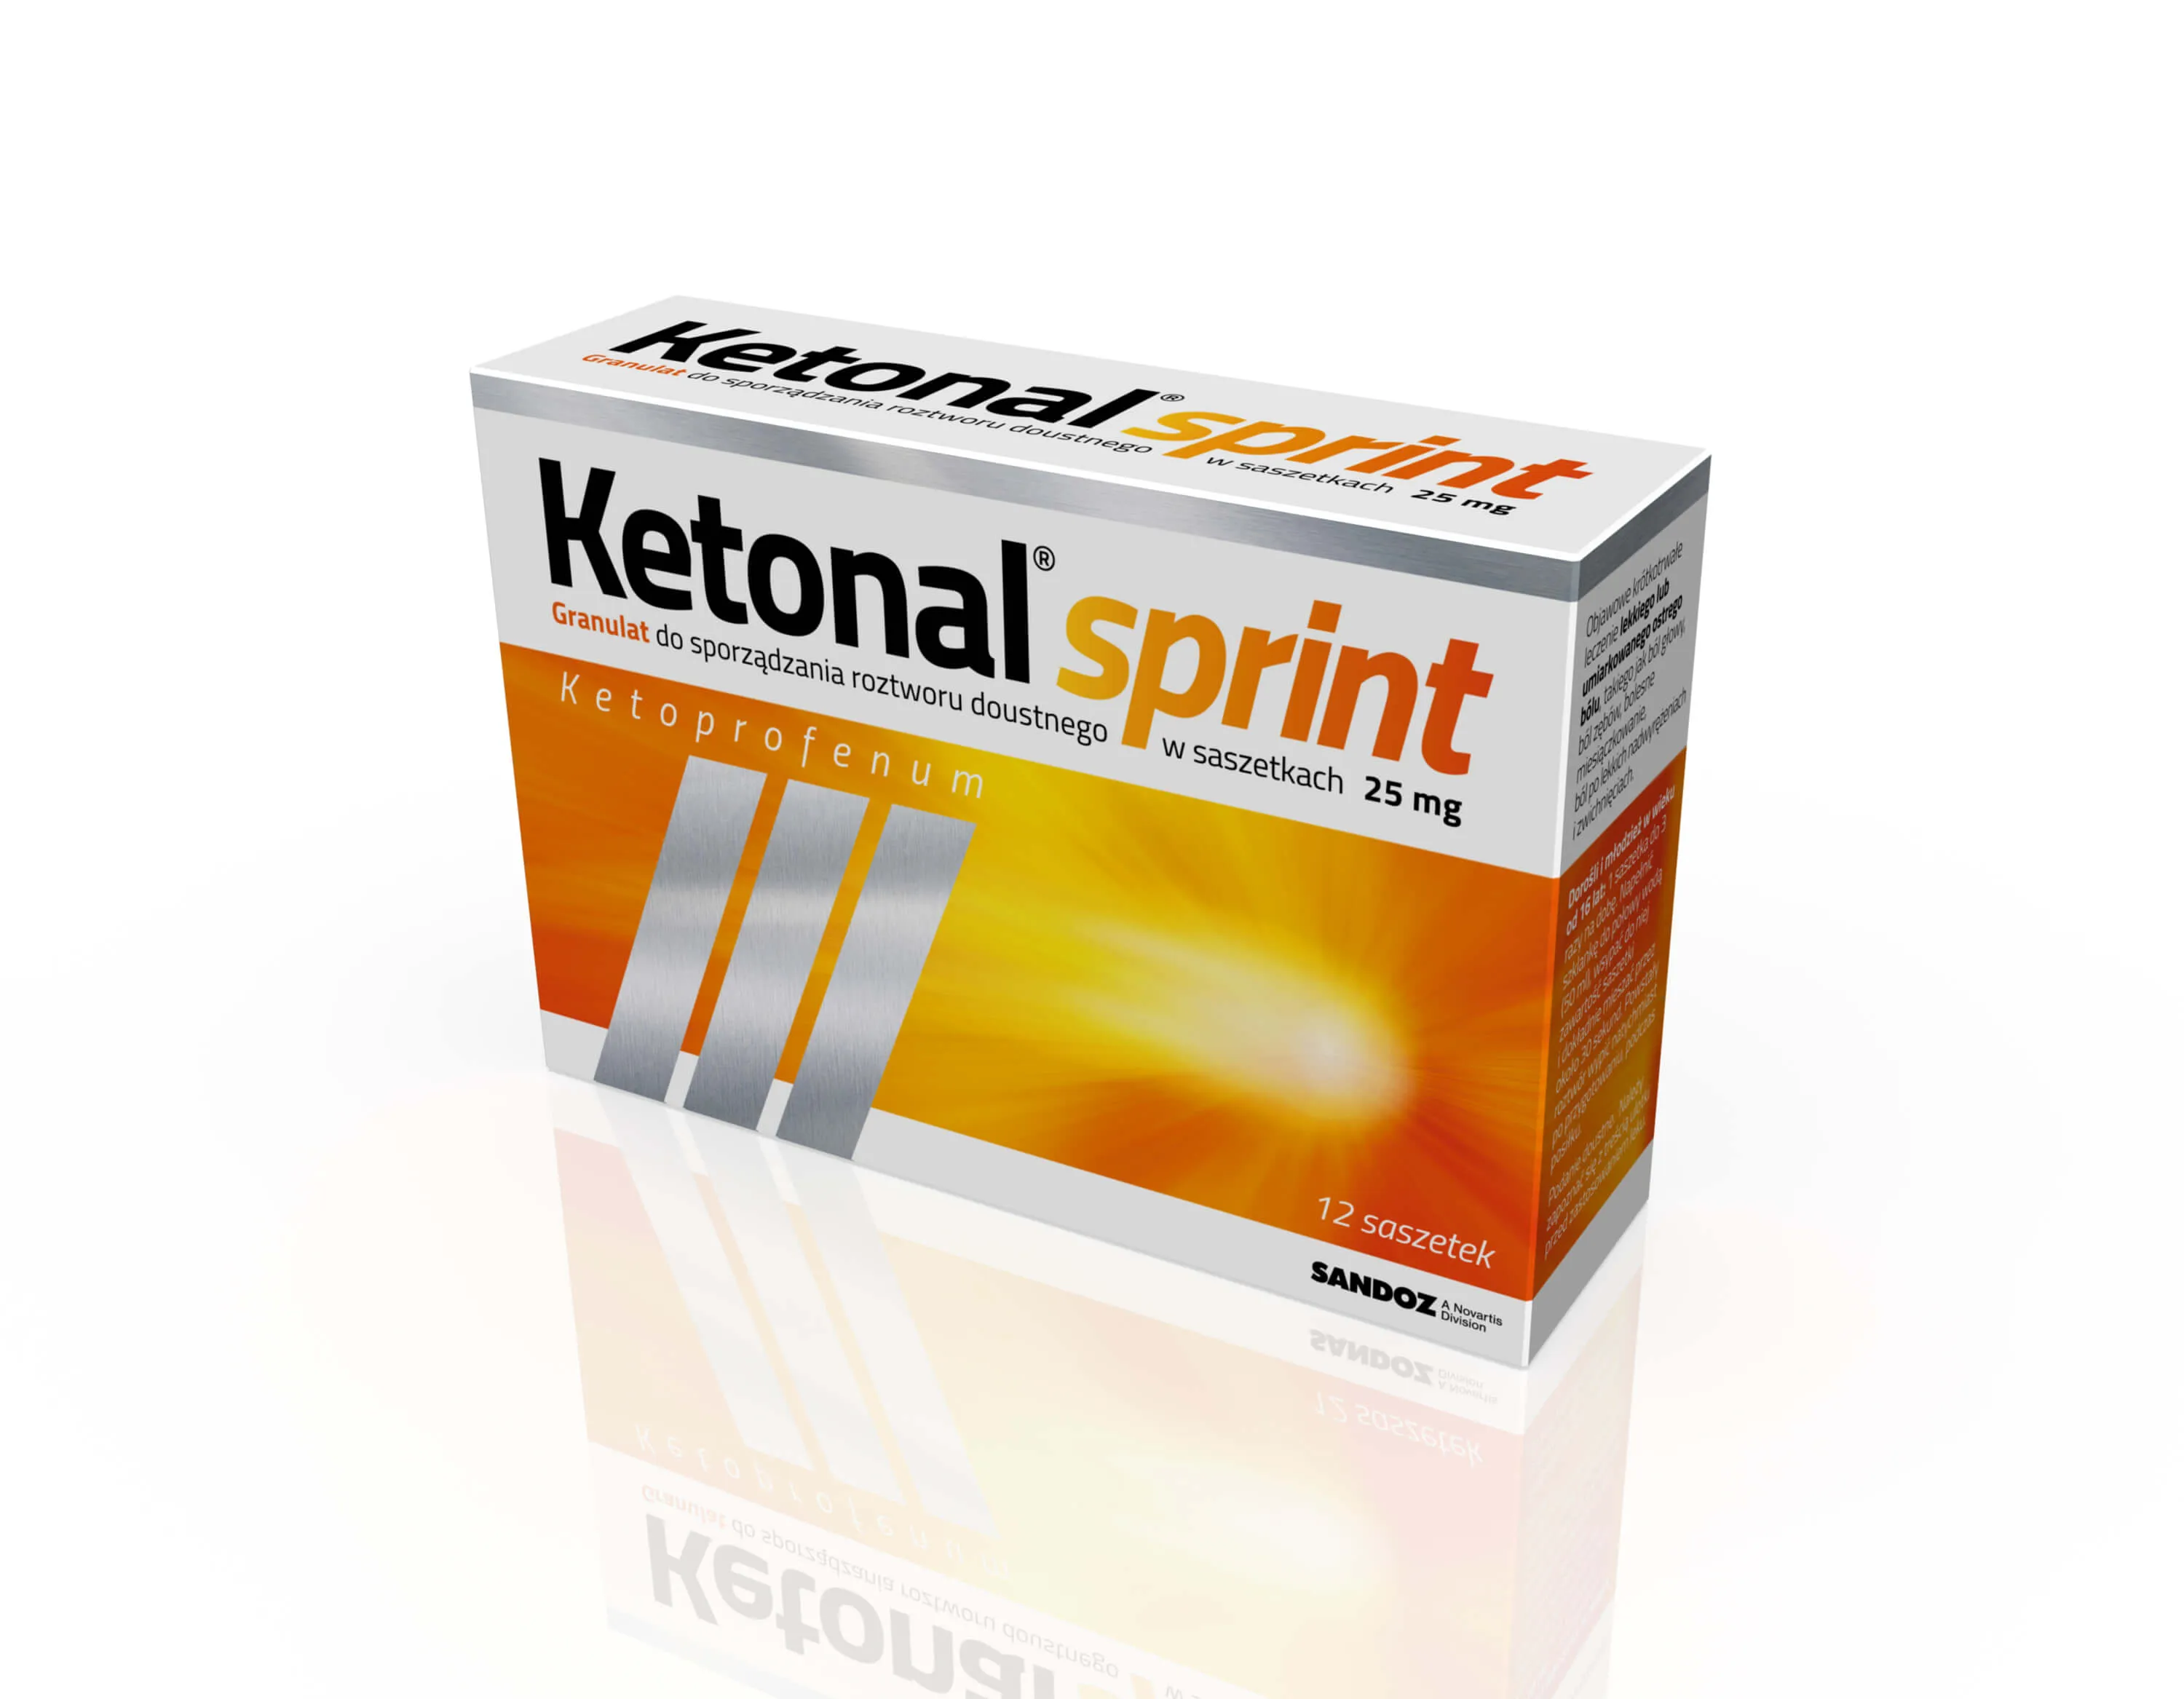 Ketonal Sprint, 25 mg, granulat do sporządzania roztworu doustnego, 12 saszetek